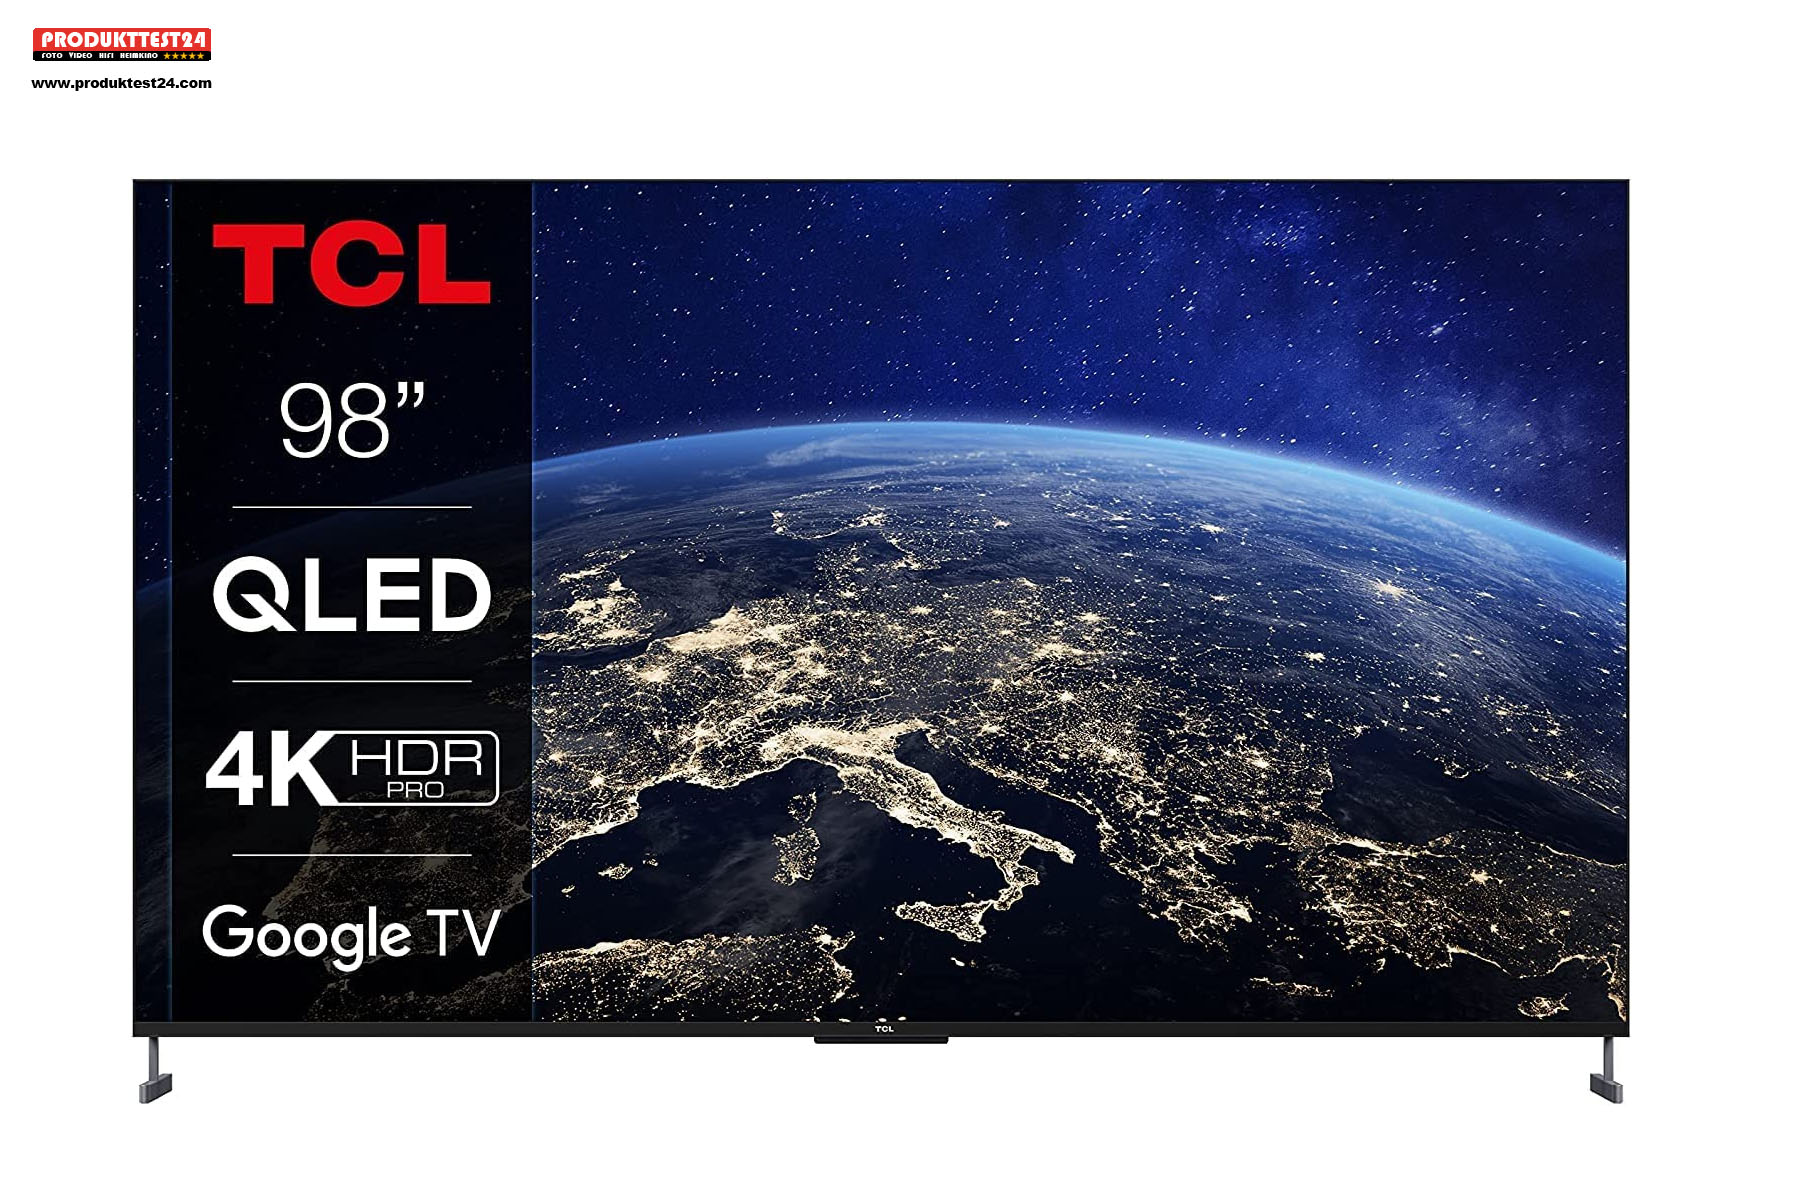 Der TCL 98C735 ist der größte Fernseher der Welt. 